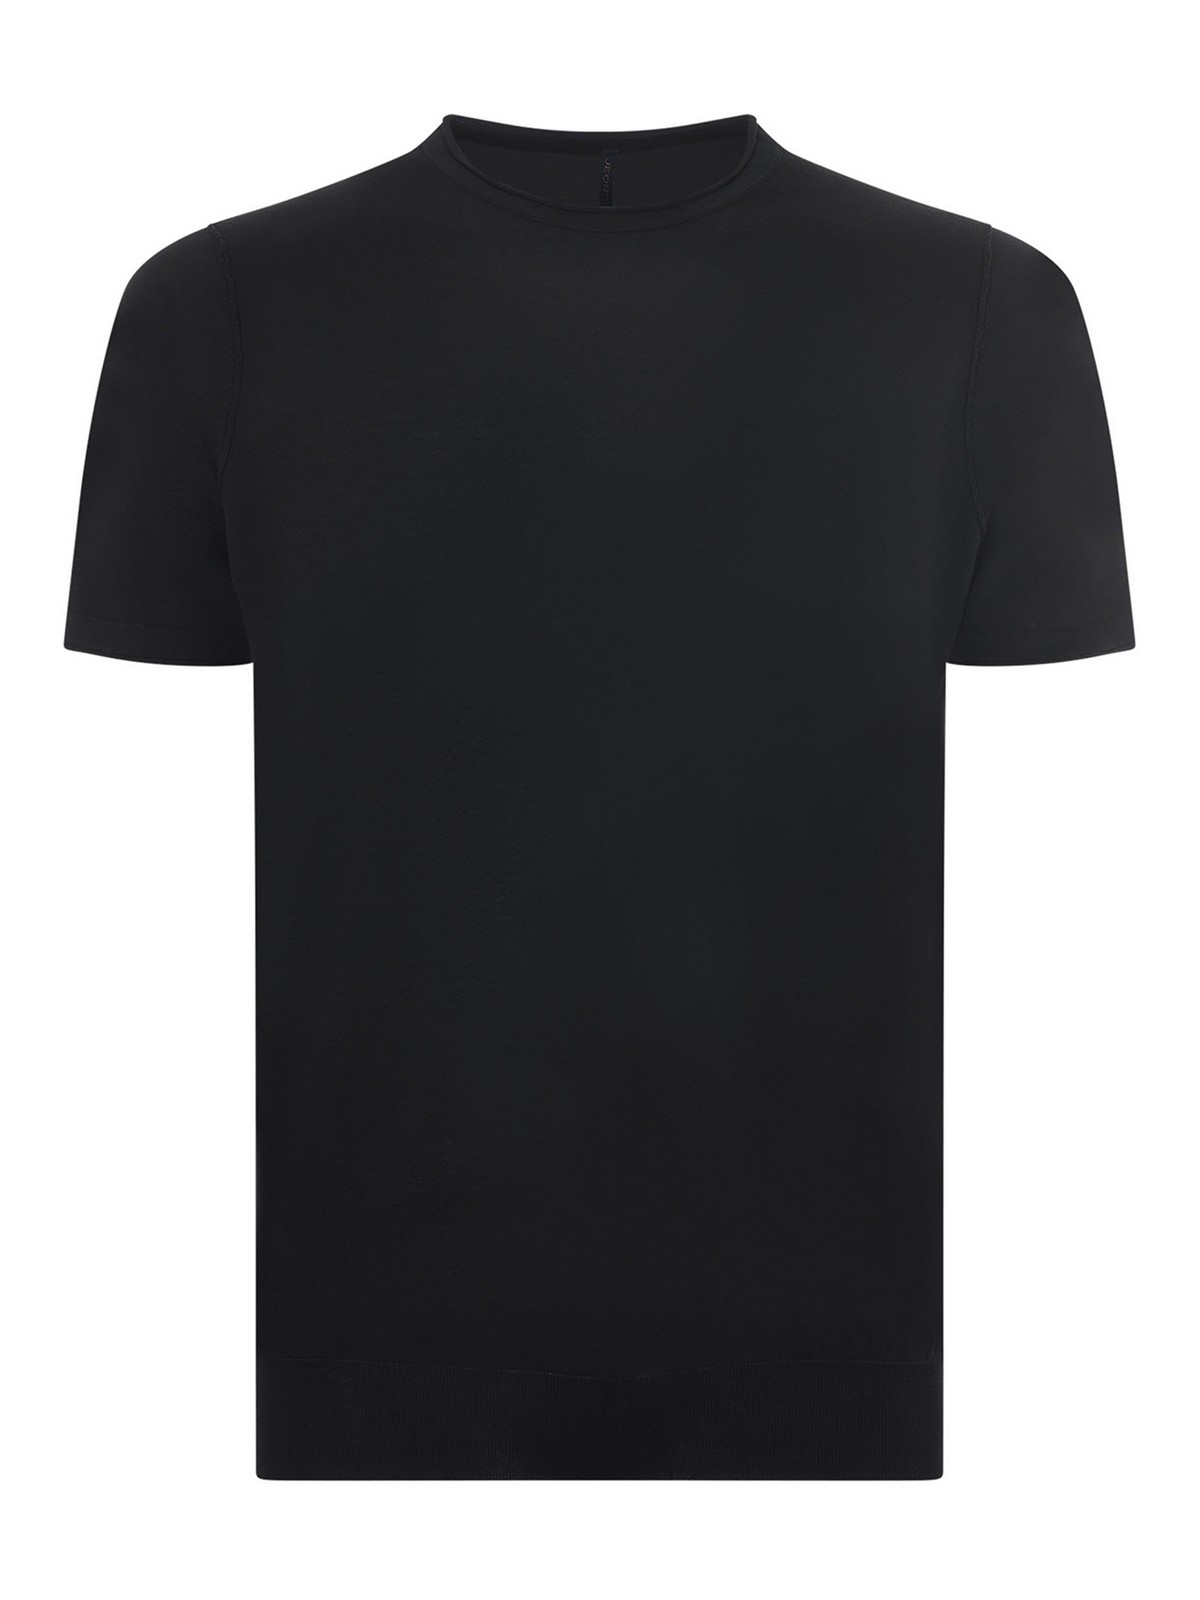 Shop Jeordie's Jeordies T-shirt In Black